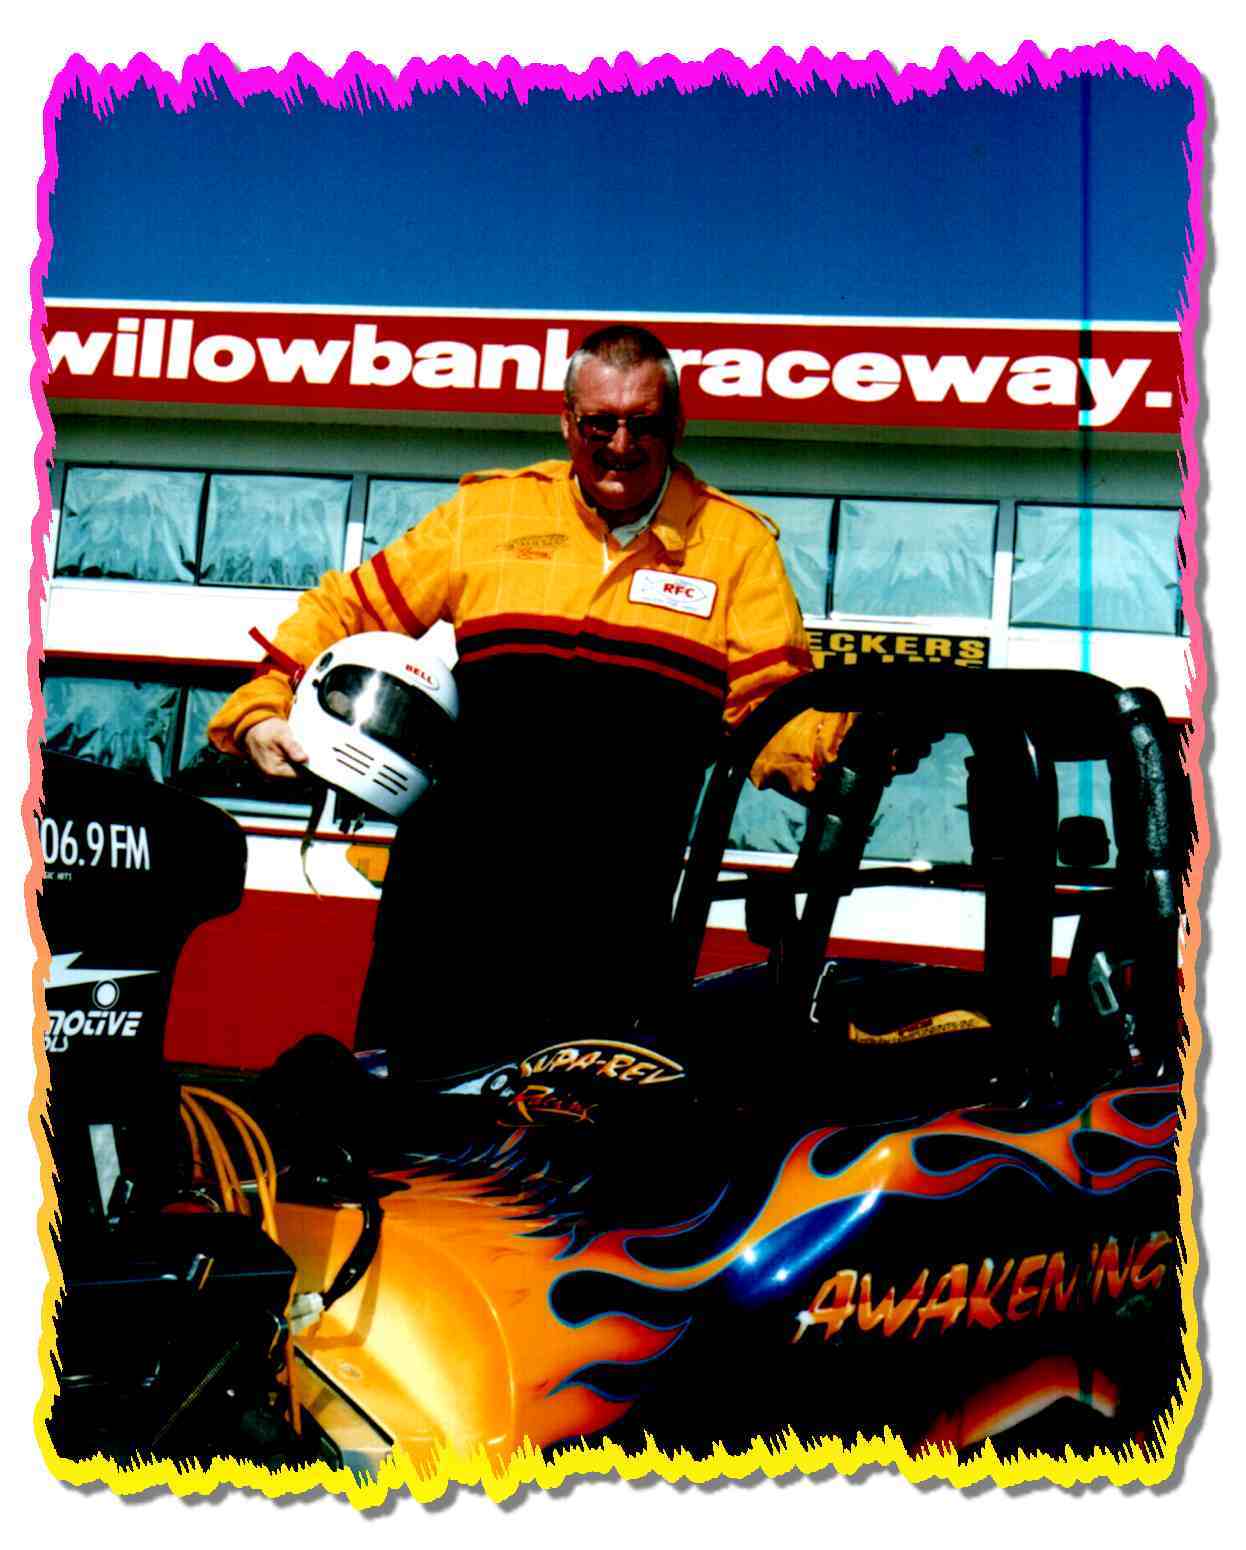 Steve at Willowbank Raceway